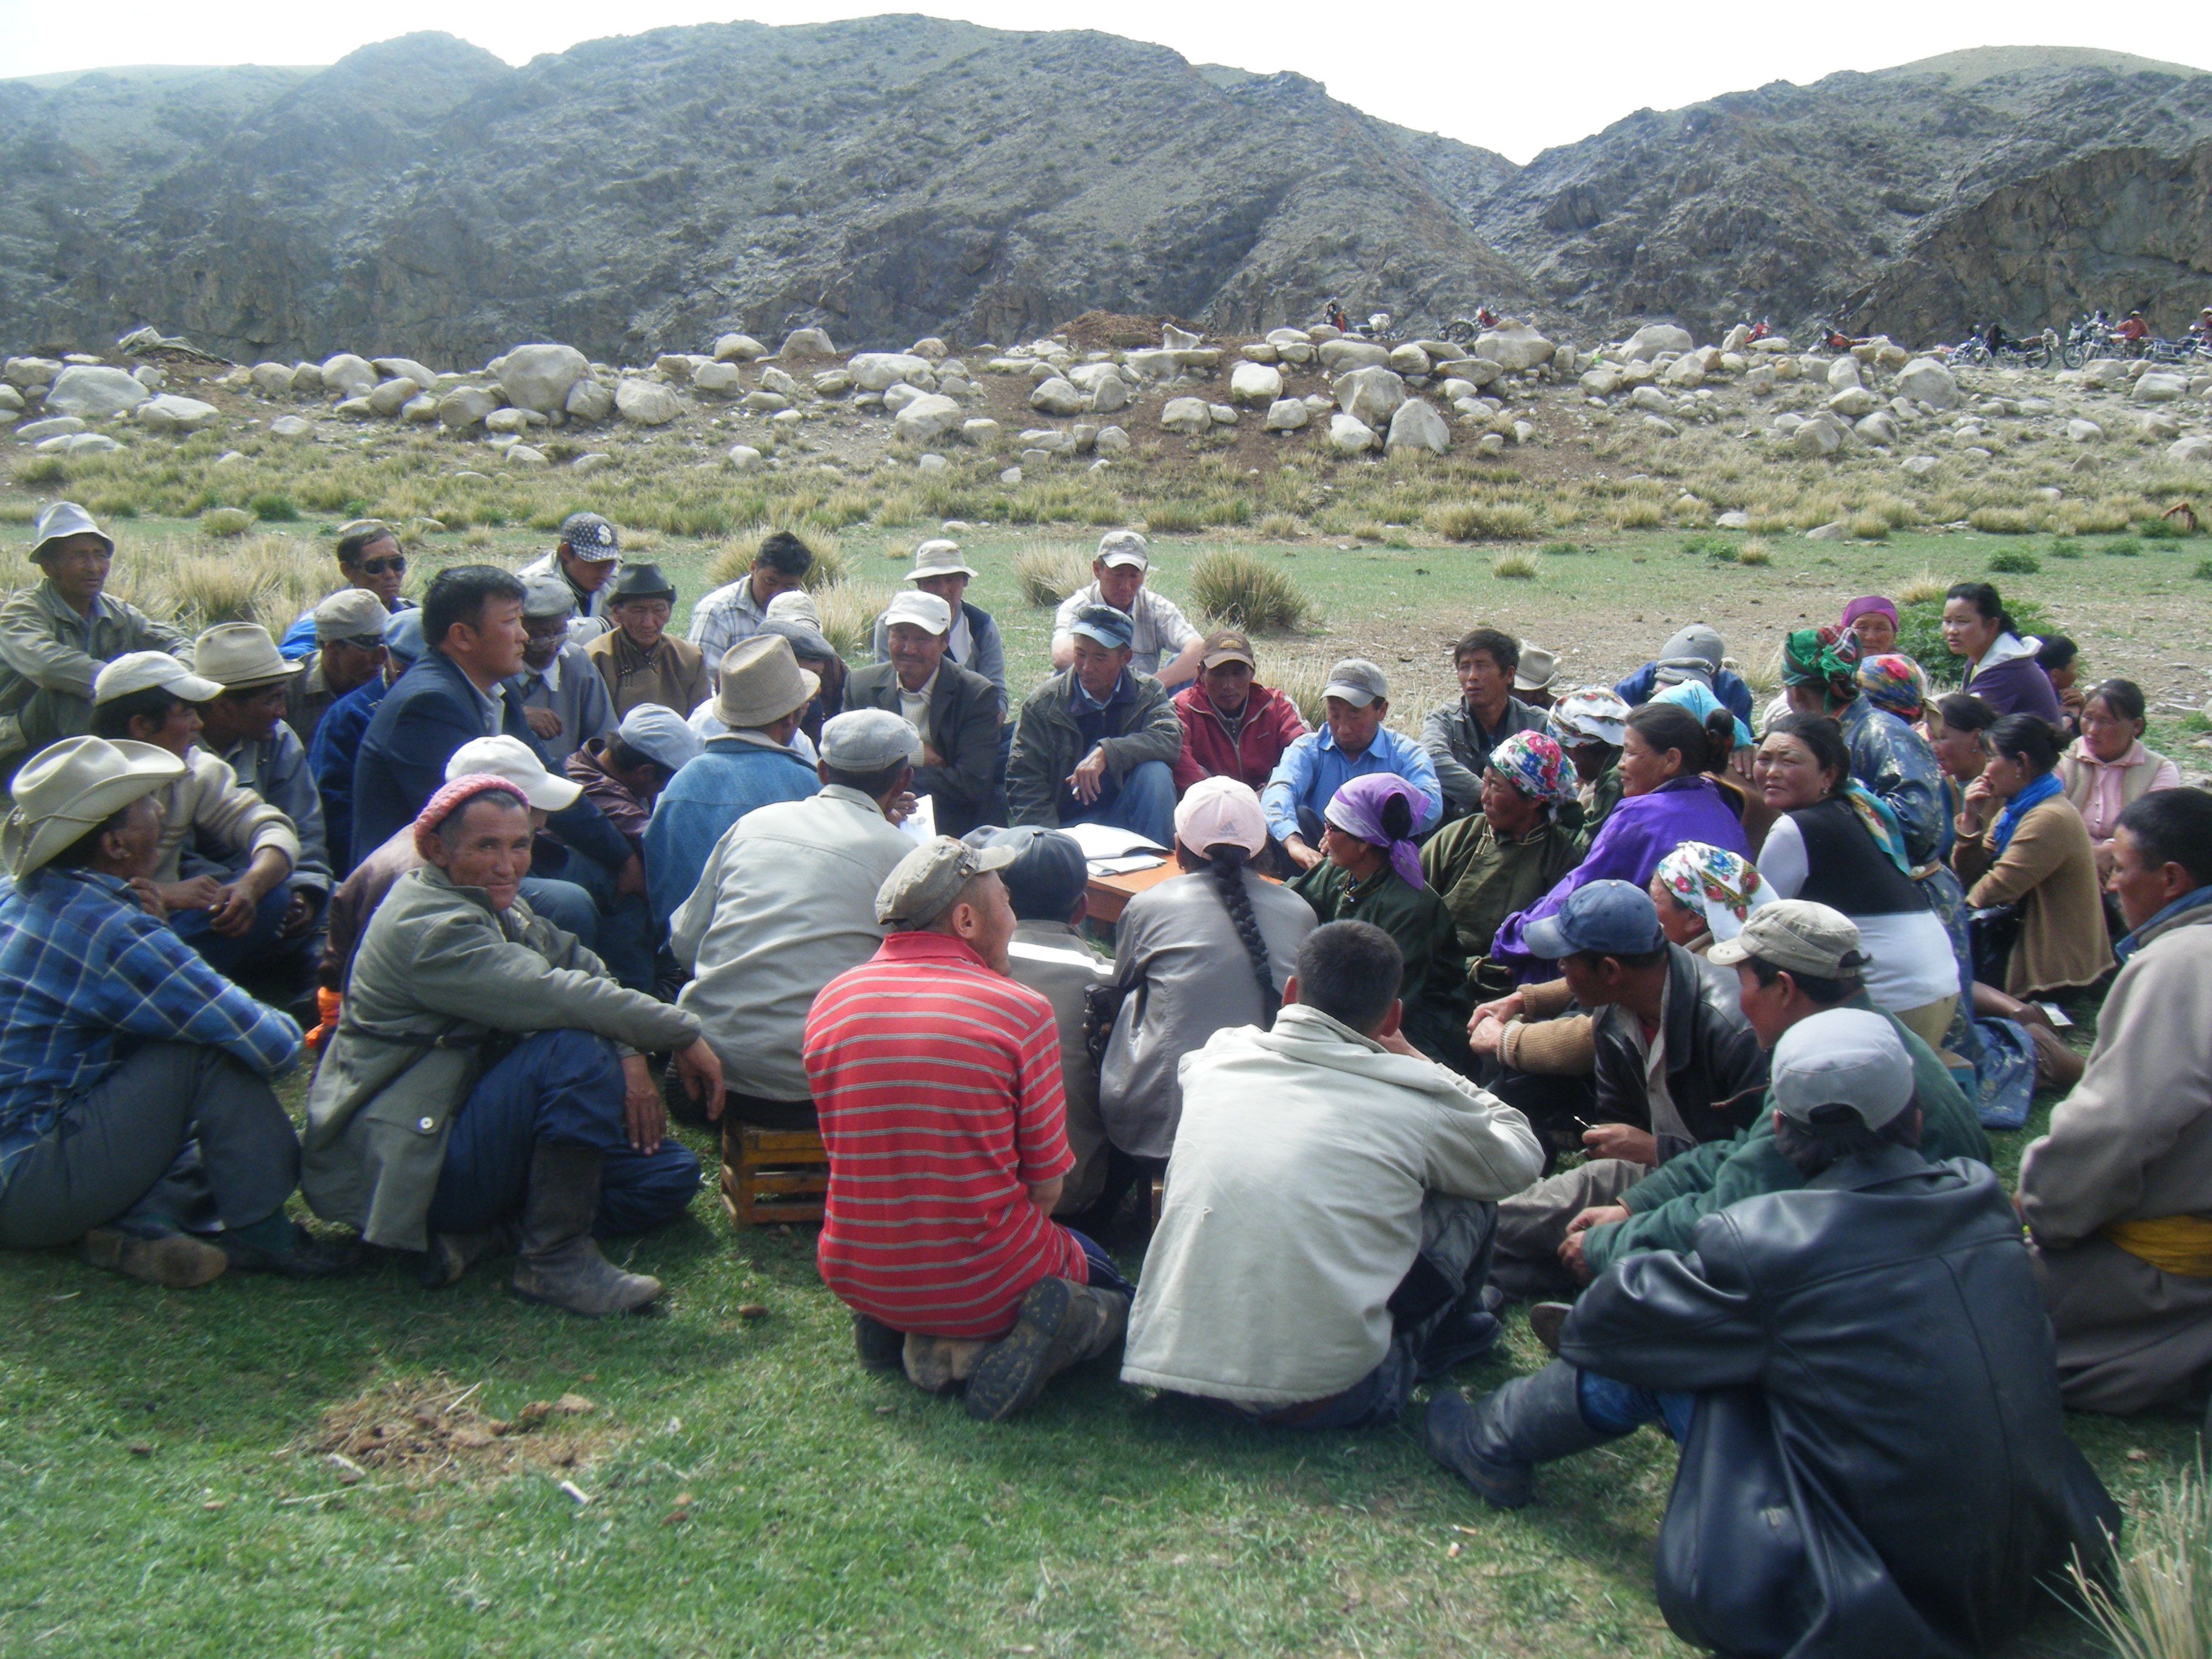 Grupo de pastores y pastoras sentados en la hierba, en pleno debate.